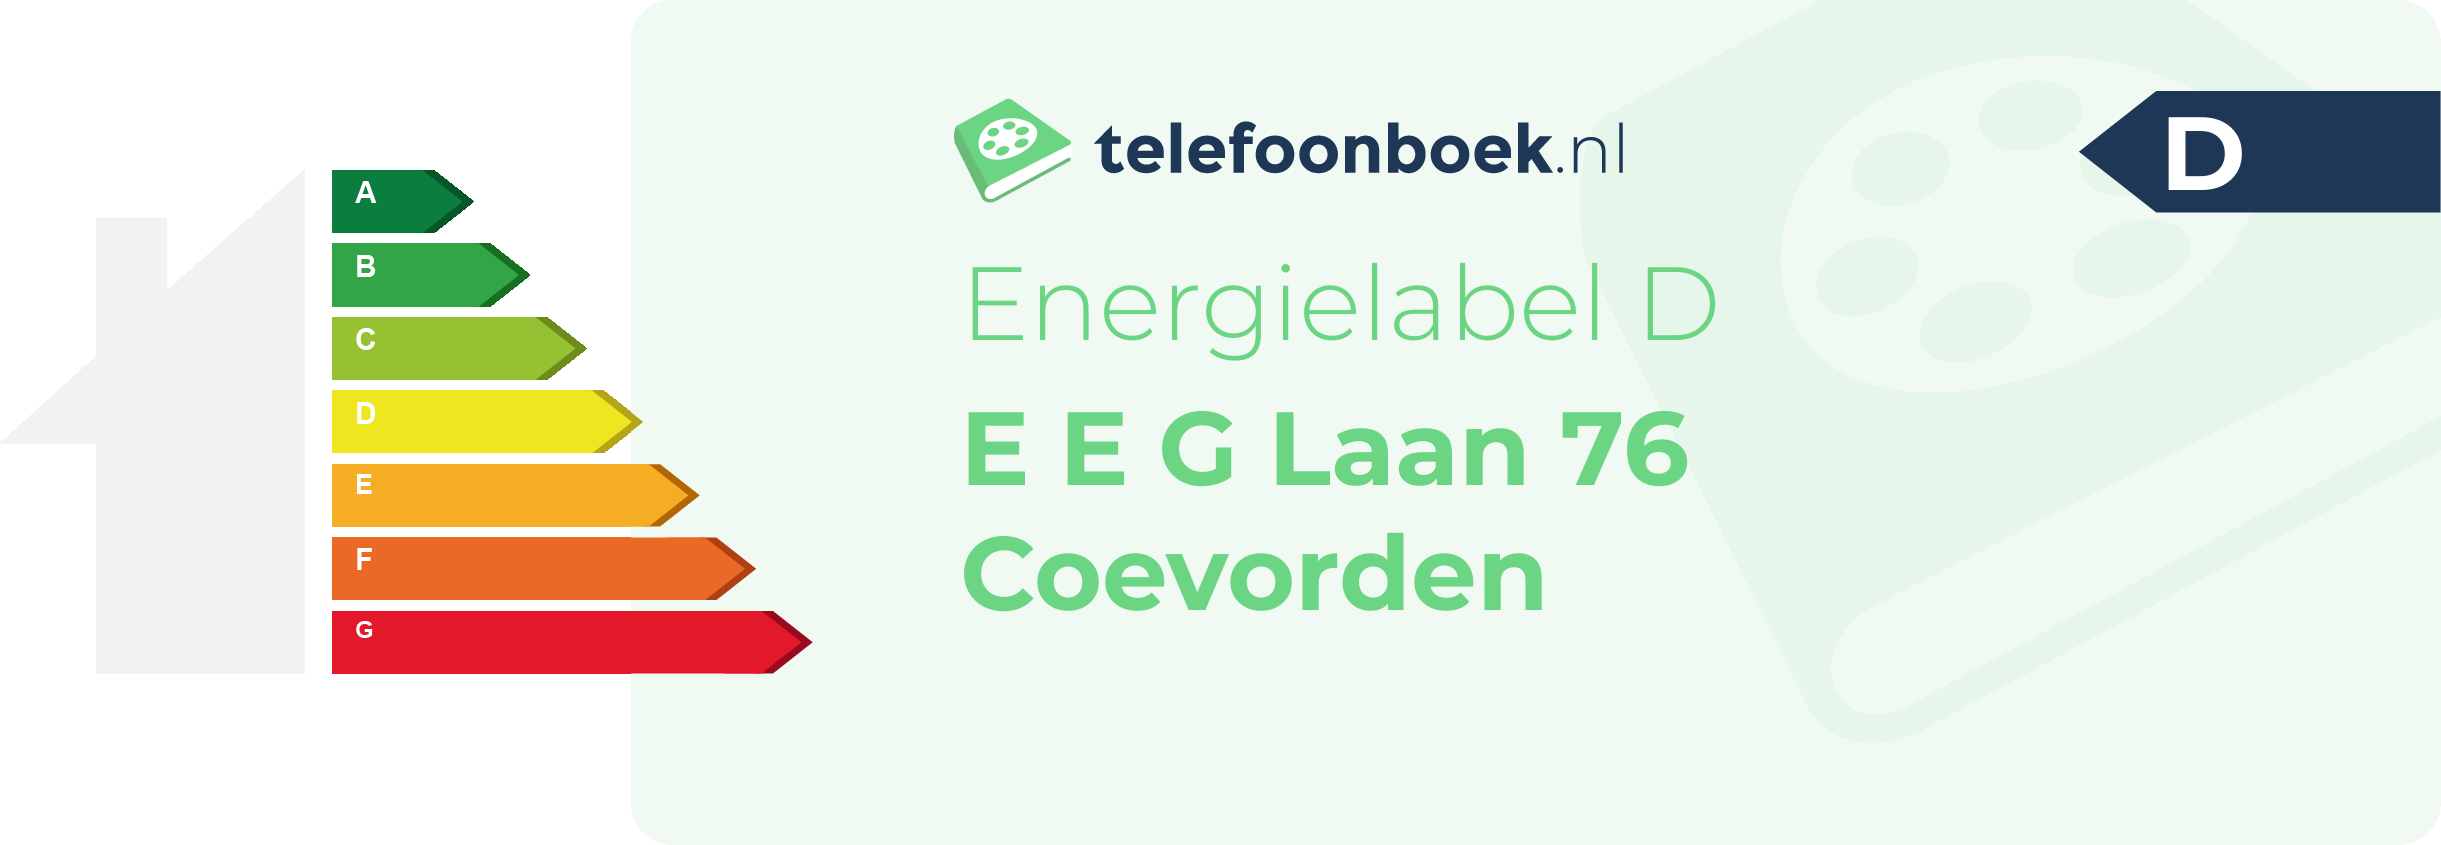 Energielabel E E G Laan 76 Coevorden